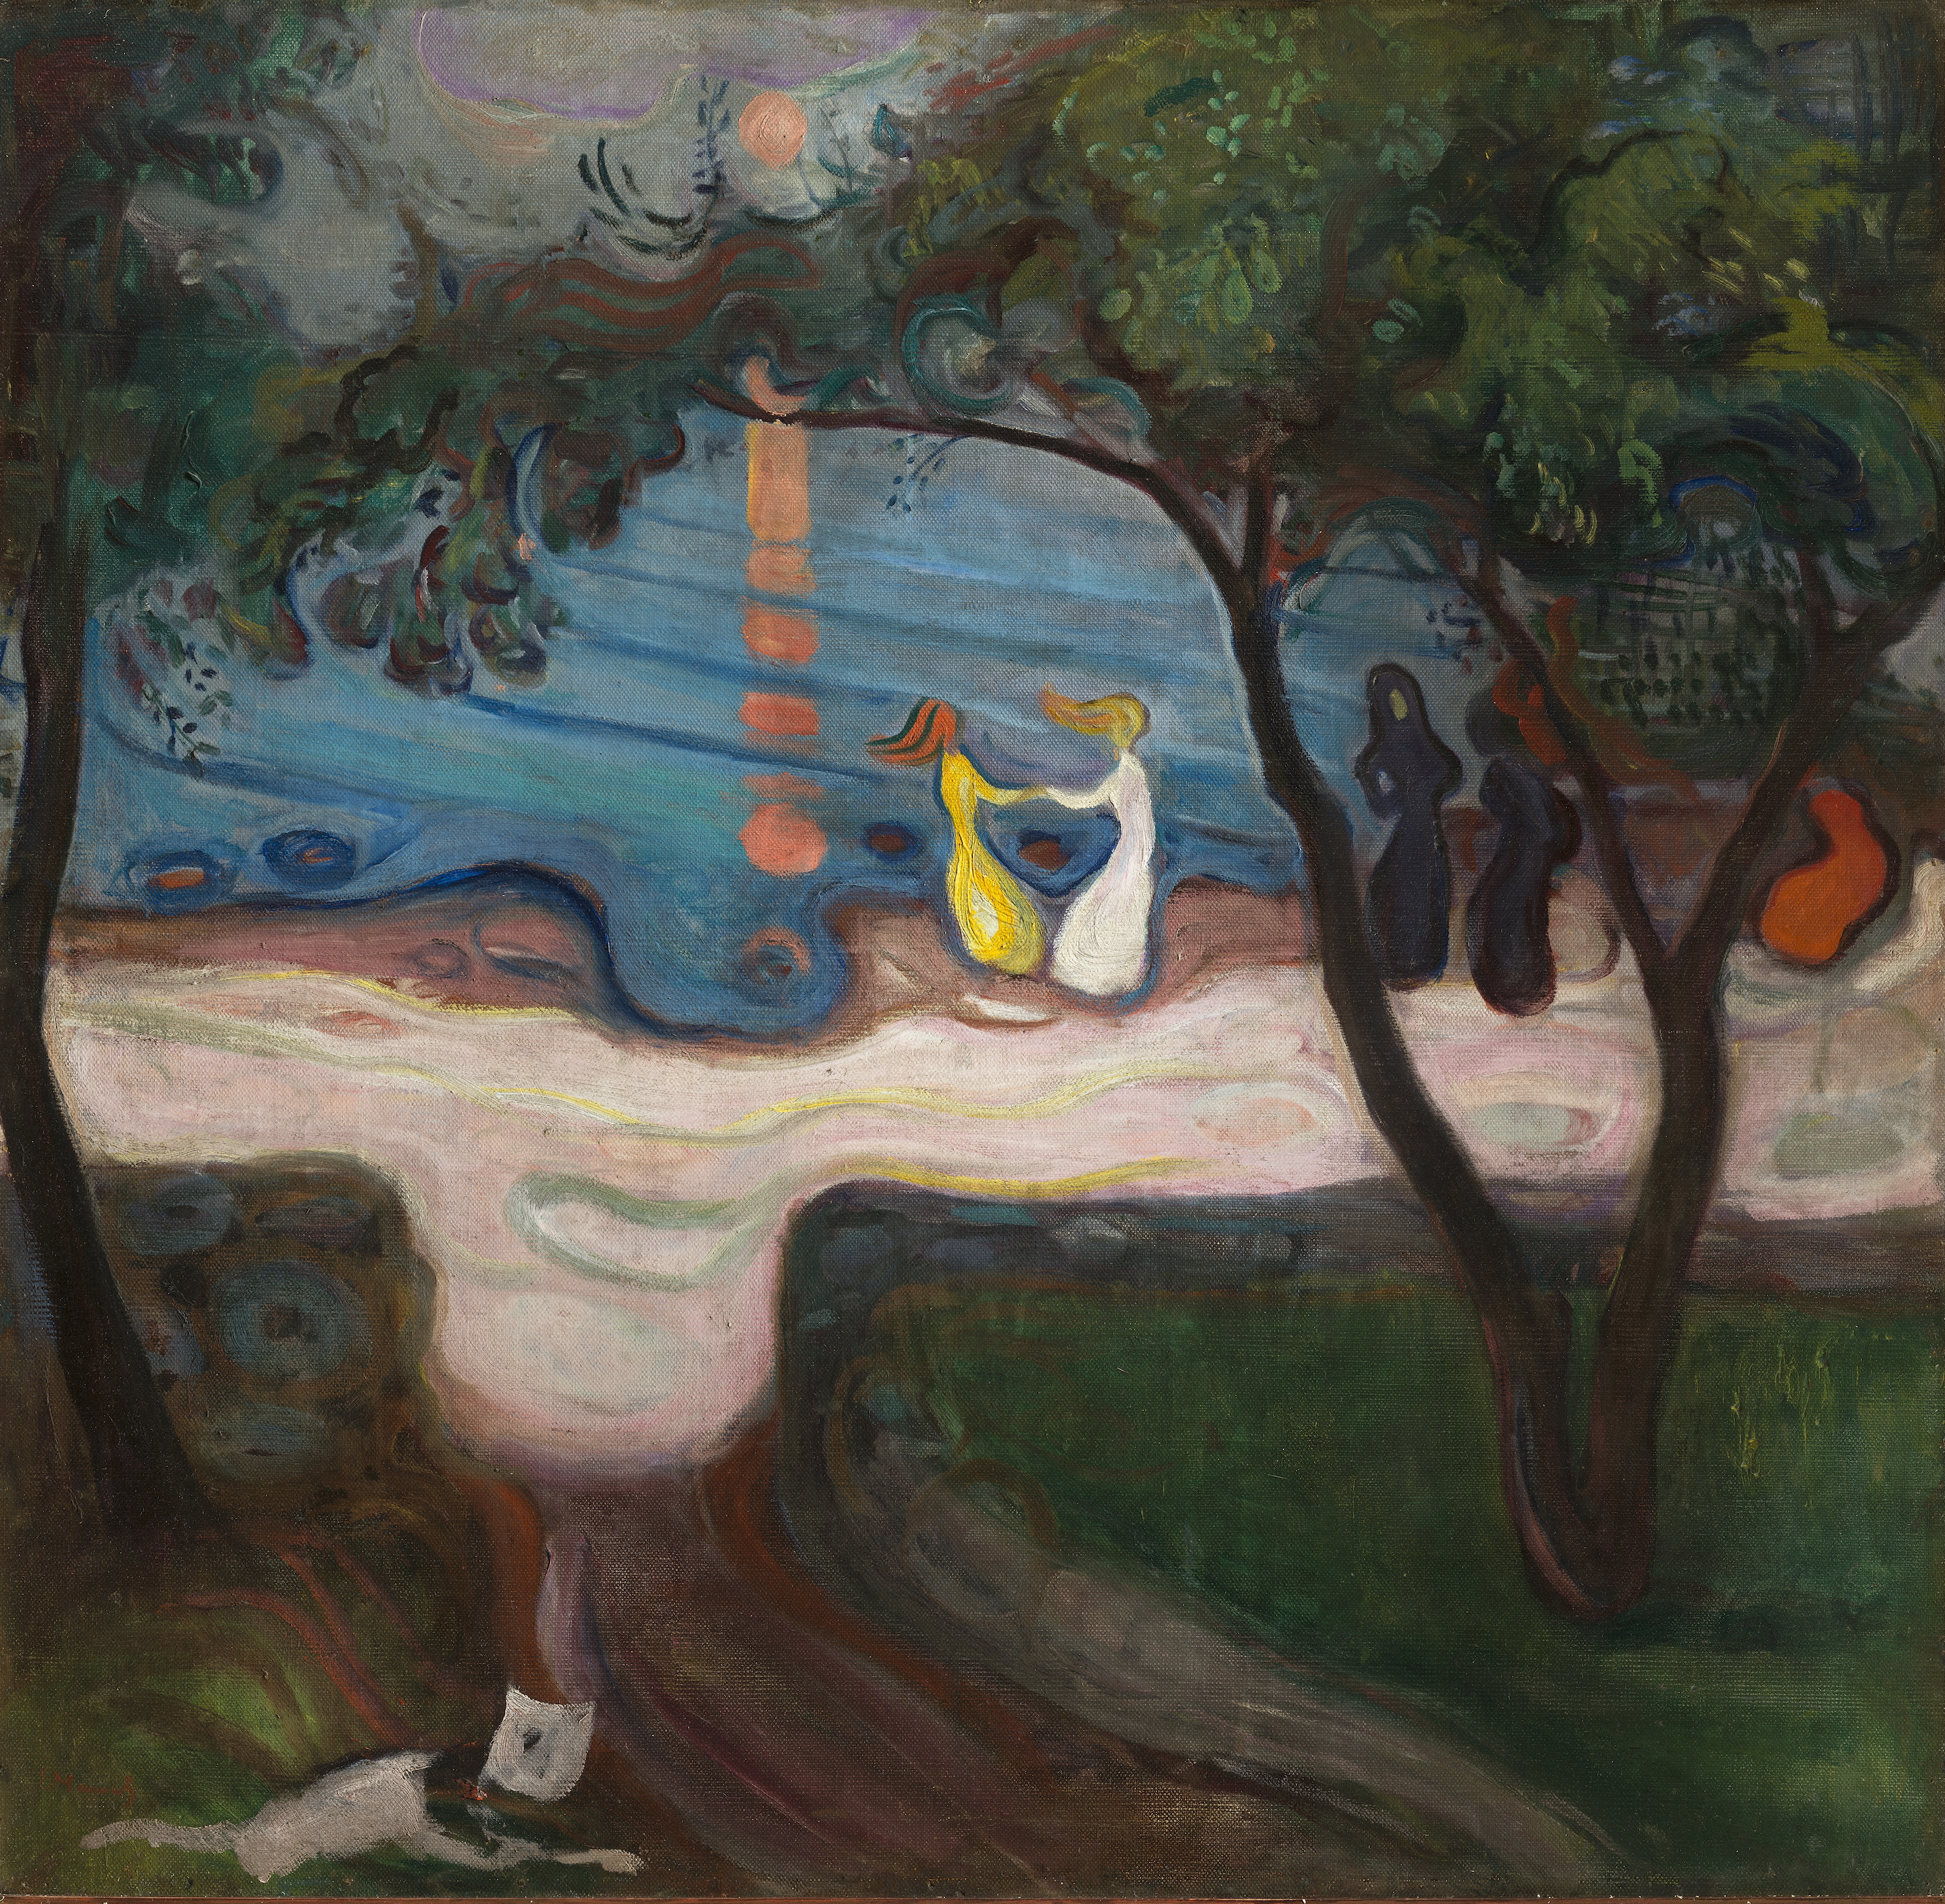 Tanz am Ufer by Edvard Munch - 1900 - 95,5 x 98,5 cm Nationalgalerie Prag